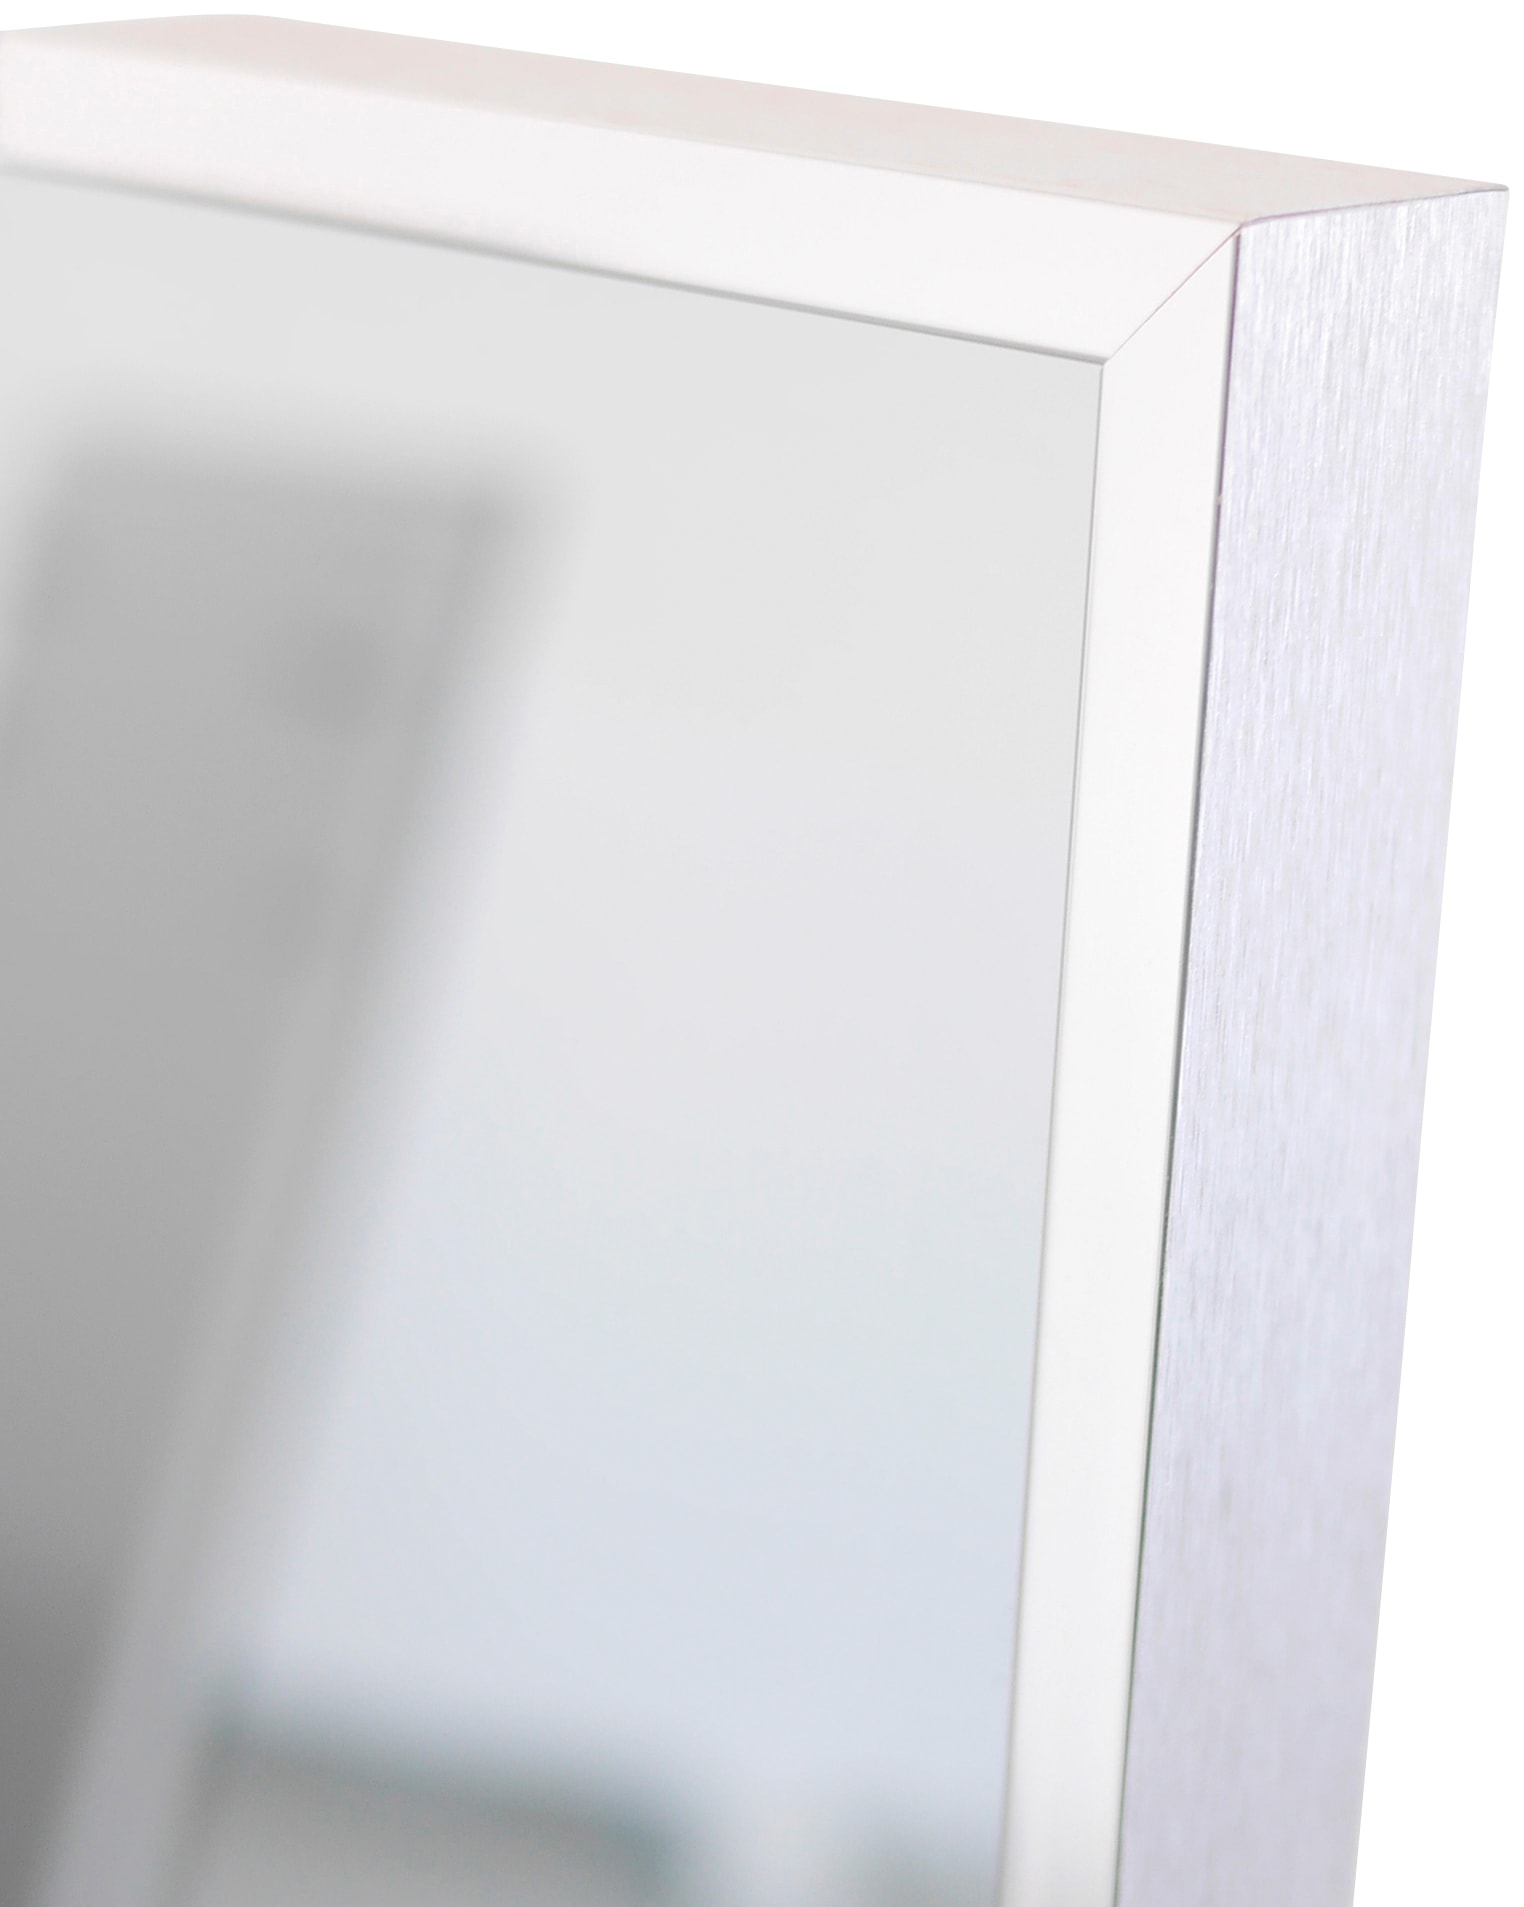 Vasner Infrarotheizung »Zipris S 400«, 400 W, Spiegelheizung mit Chrom-Rahmen